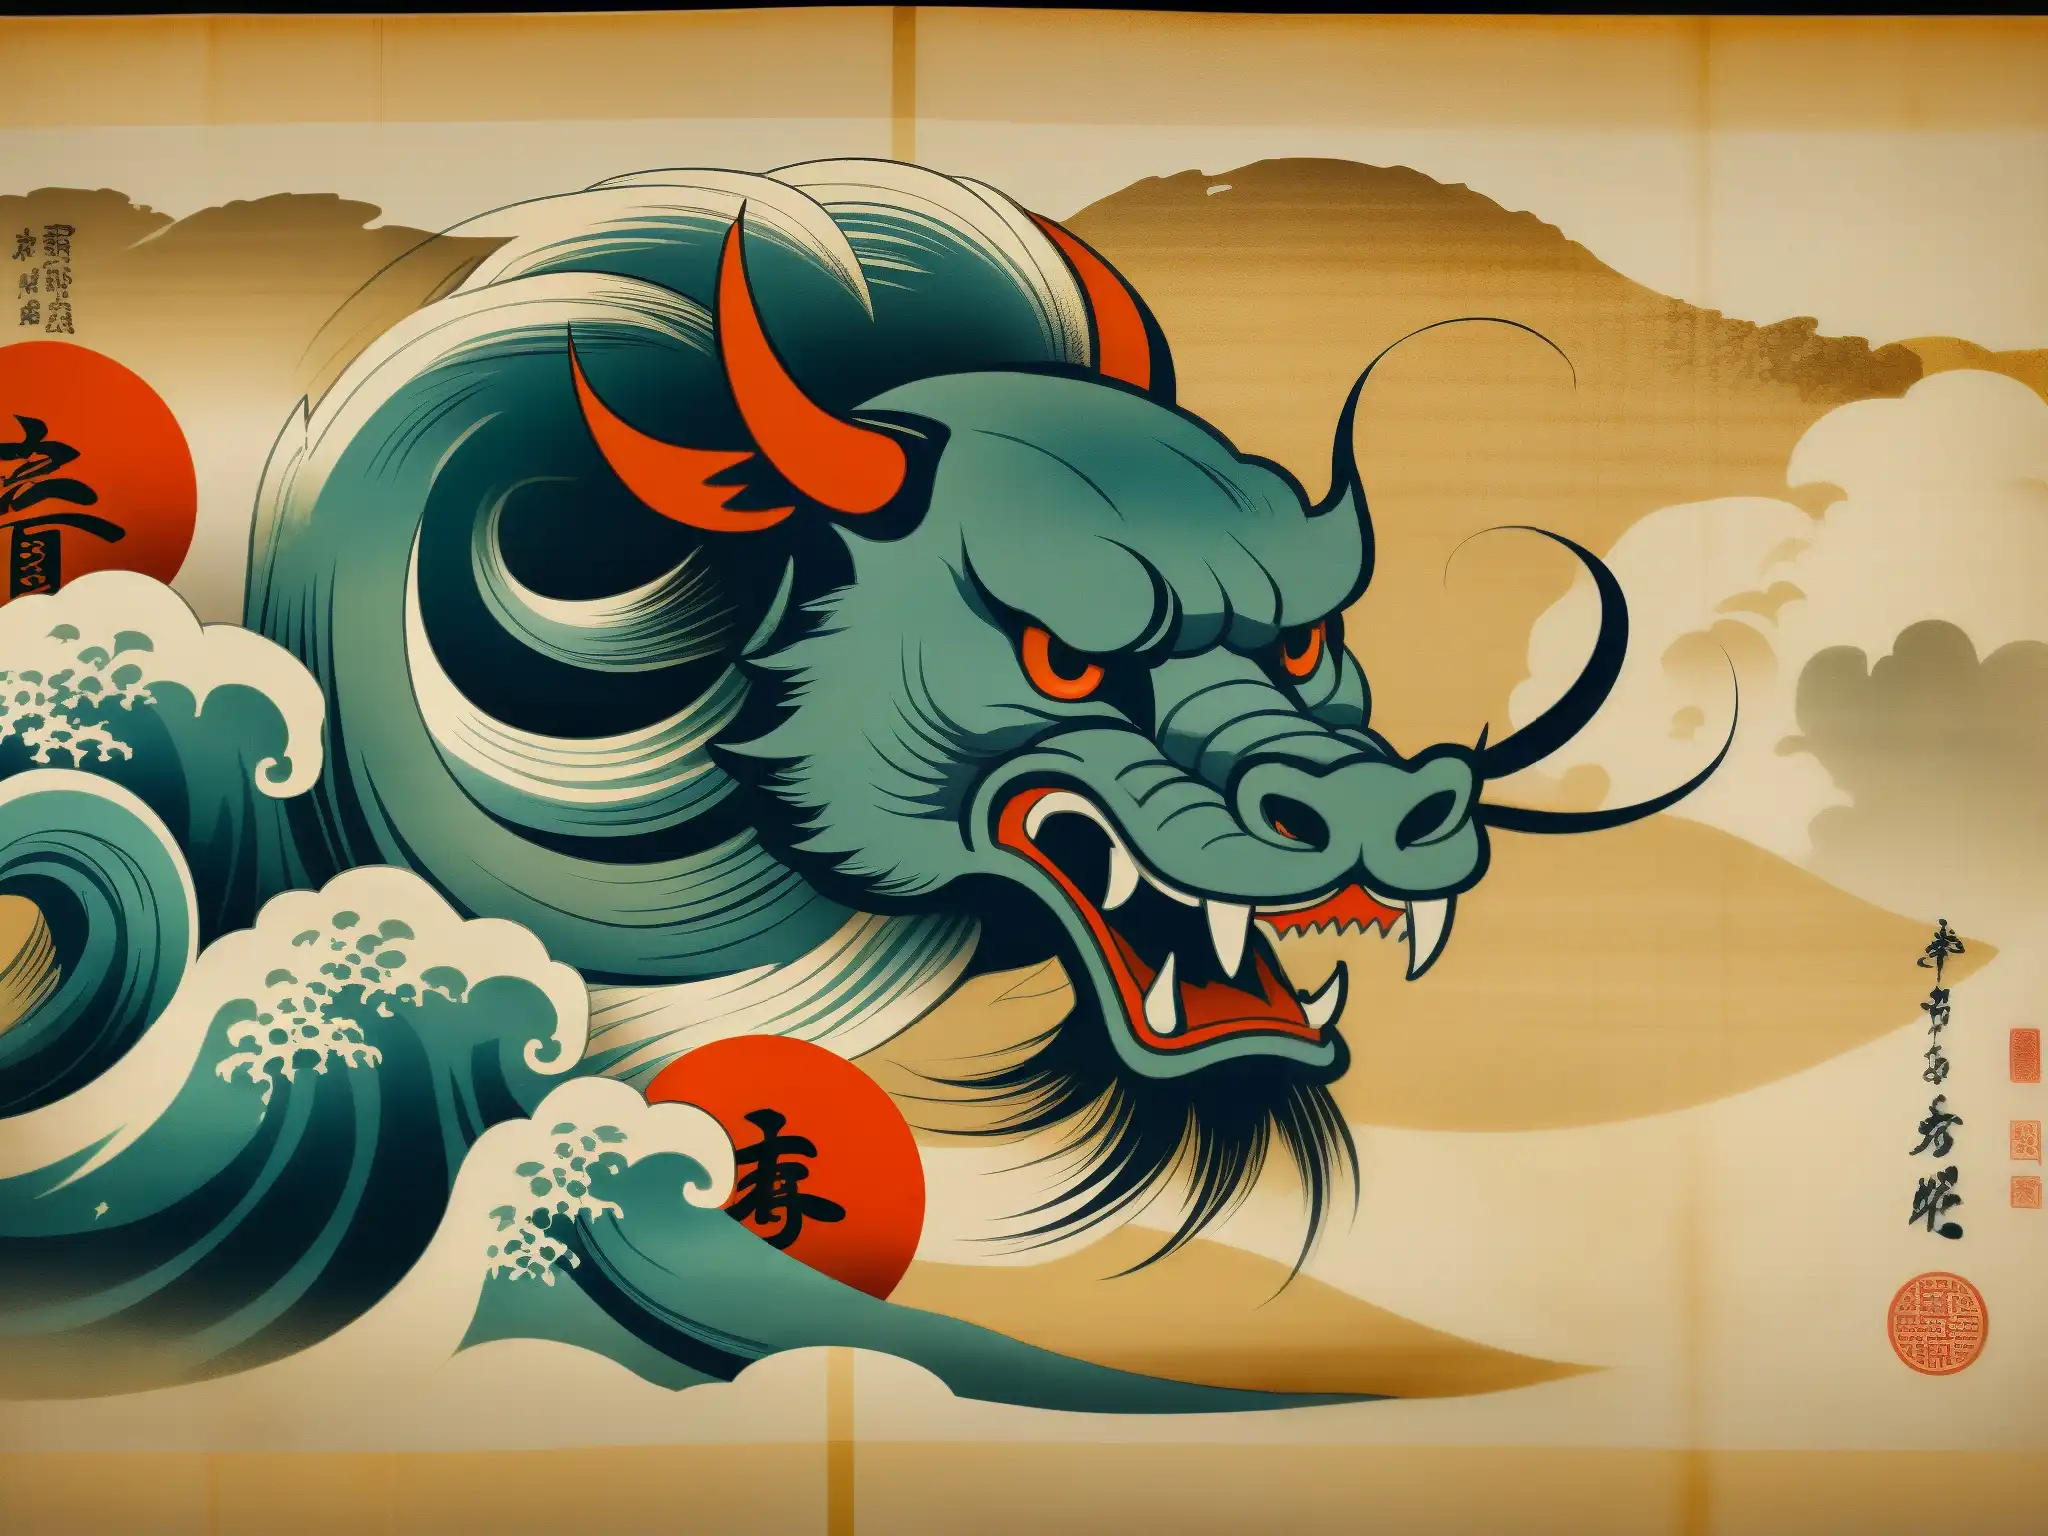 Detallado pergamino japonés con la criatura mítica Shirime espíritu ojo lugar equivocado, mostrando los intrincados trazos y colores desvanecidos